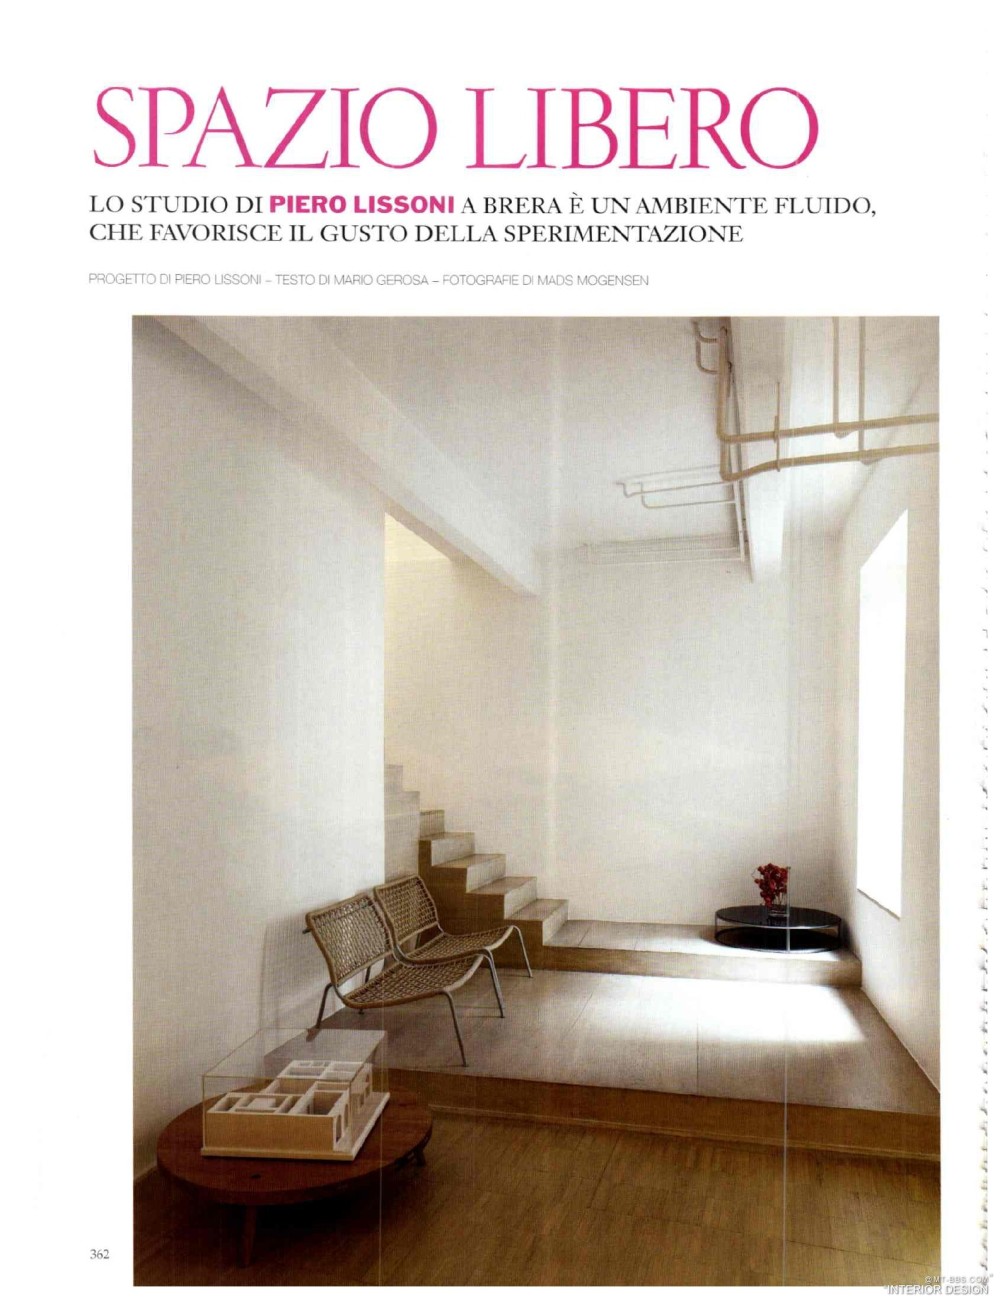 意大利AD 杂志 2012年全年JPG高清版本 全免（上传完毕）_0358.jpg